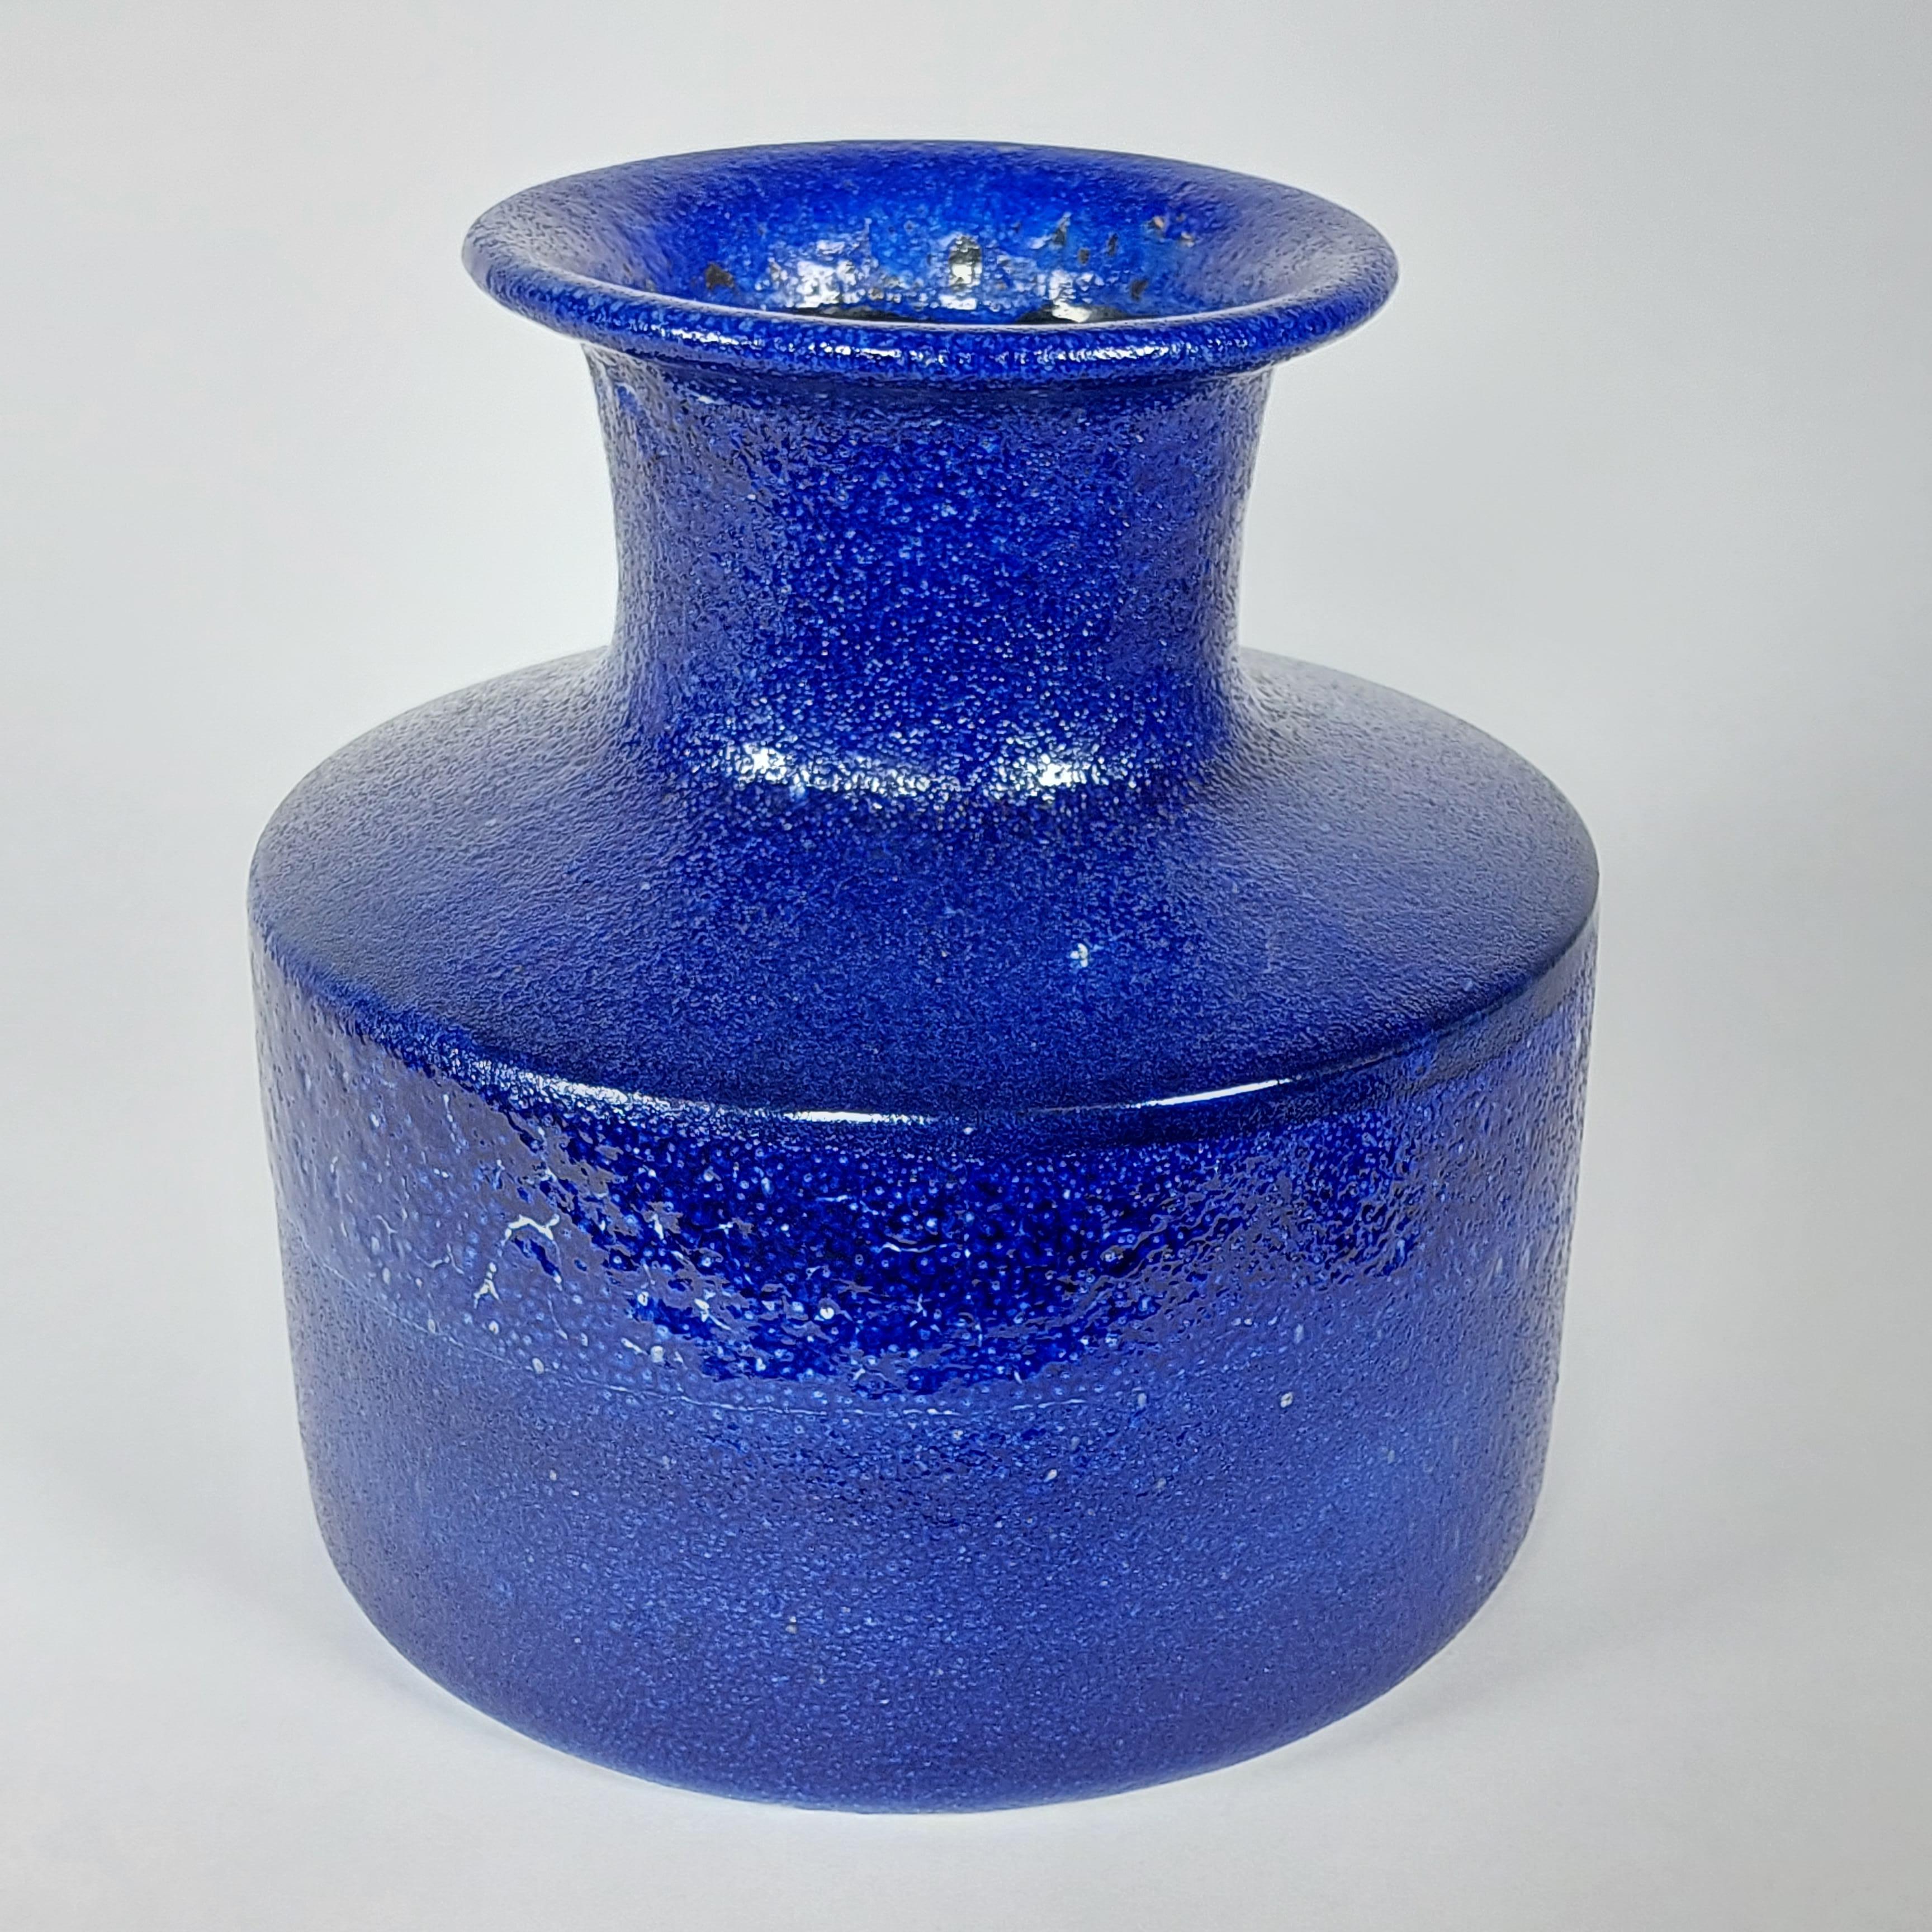 Leuchtend blaue Vase des Schweizer Künstlers und Töpfers André Freymond. Mittelgroßes Stück aus den späten 1950er bis frühen 1960er Jahren. Freymonds Stücke sind oft einzigartig, denn der Künstler hat eine Vorliebe dafür, selten zwei gleiche Stücke